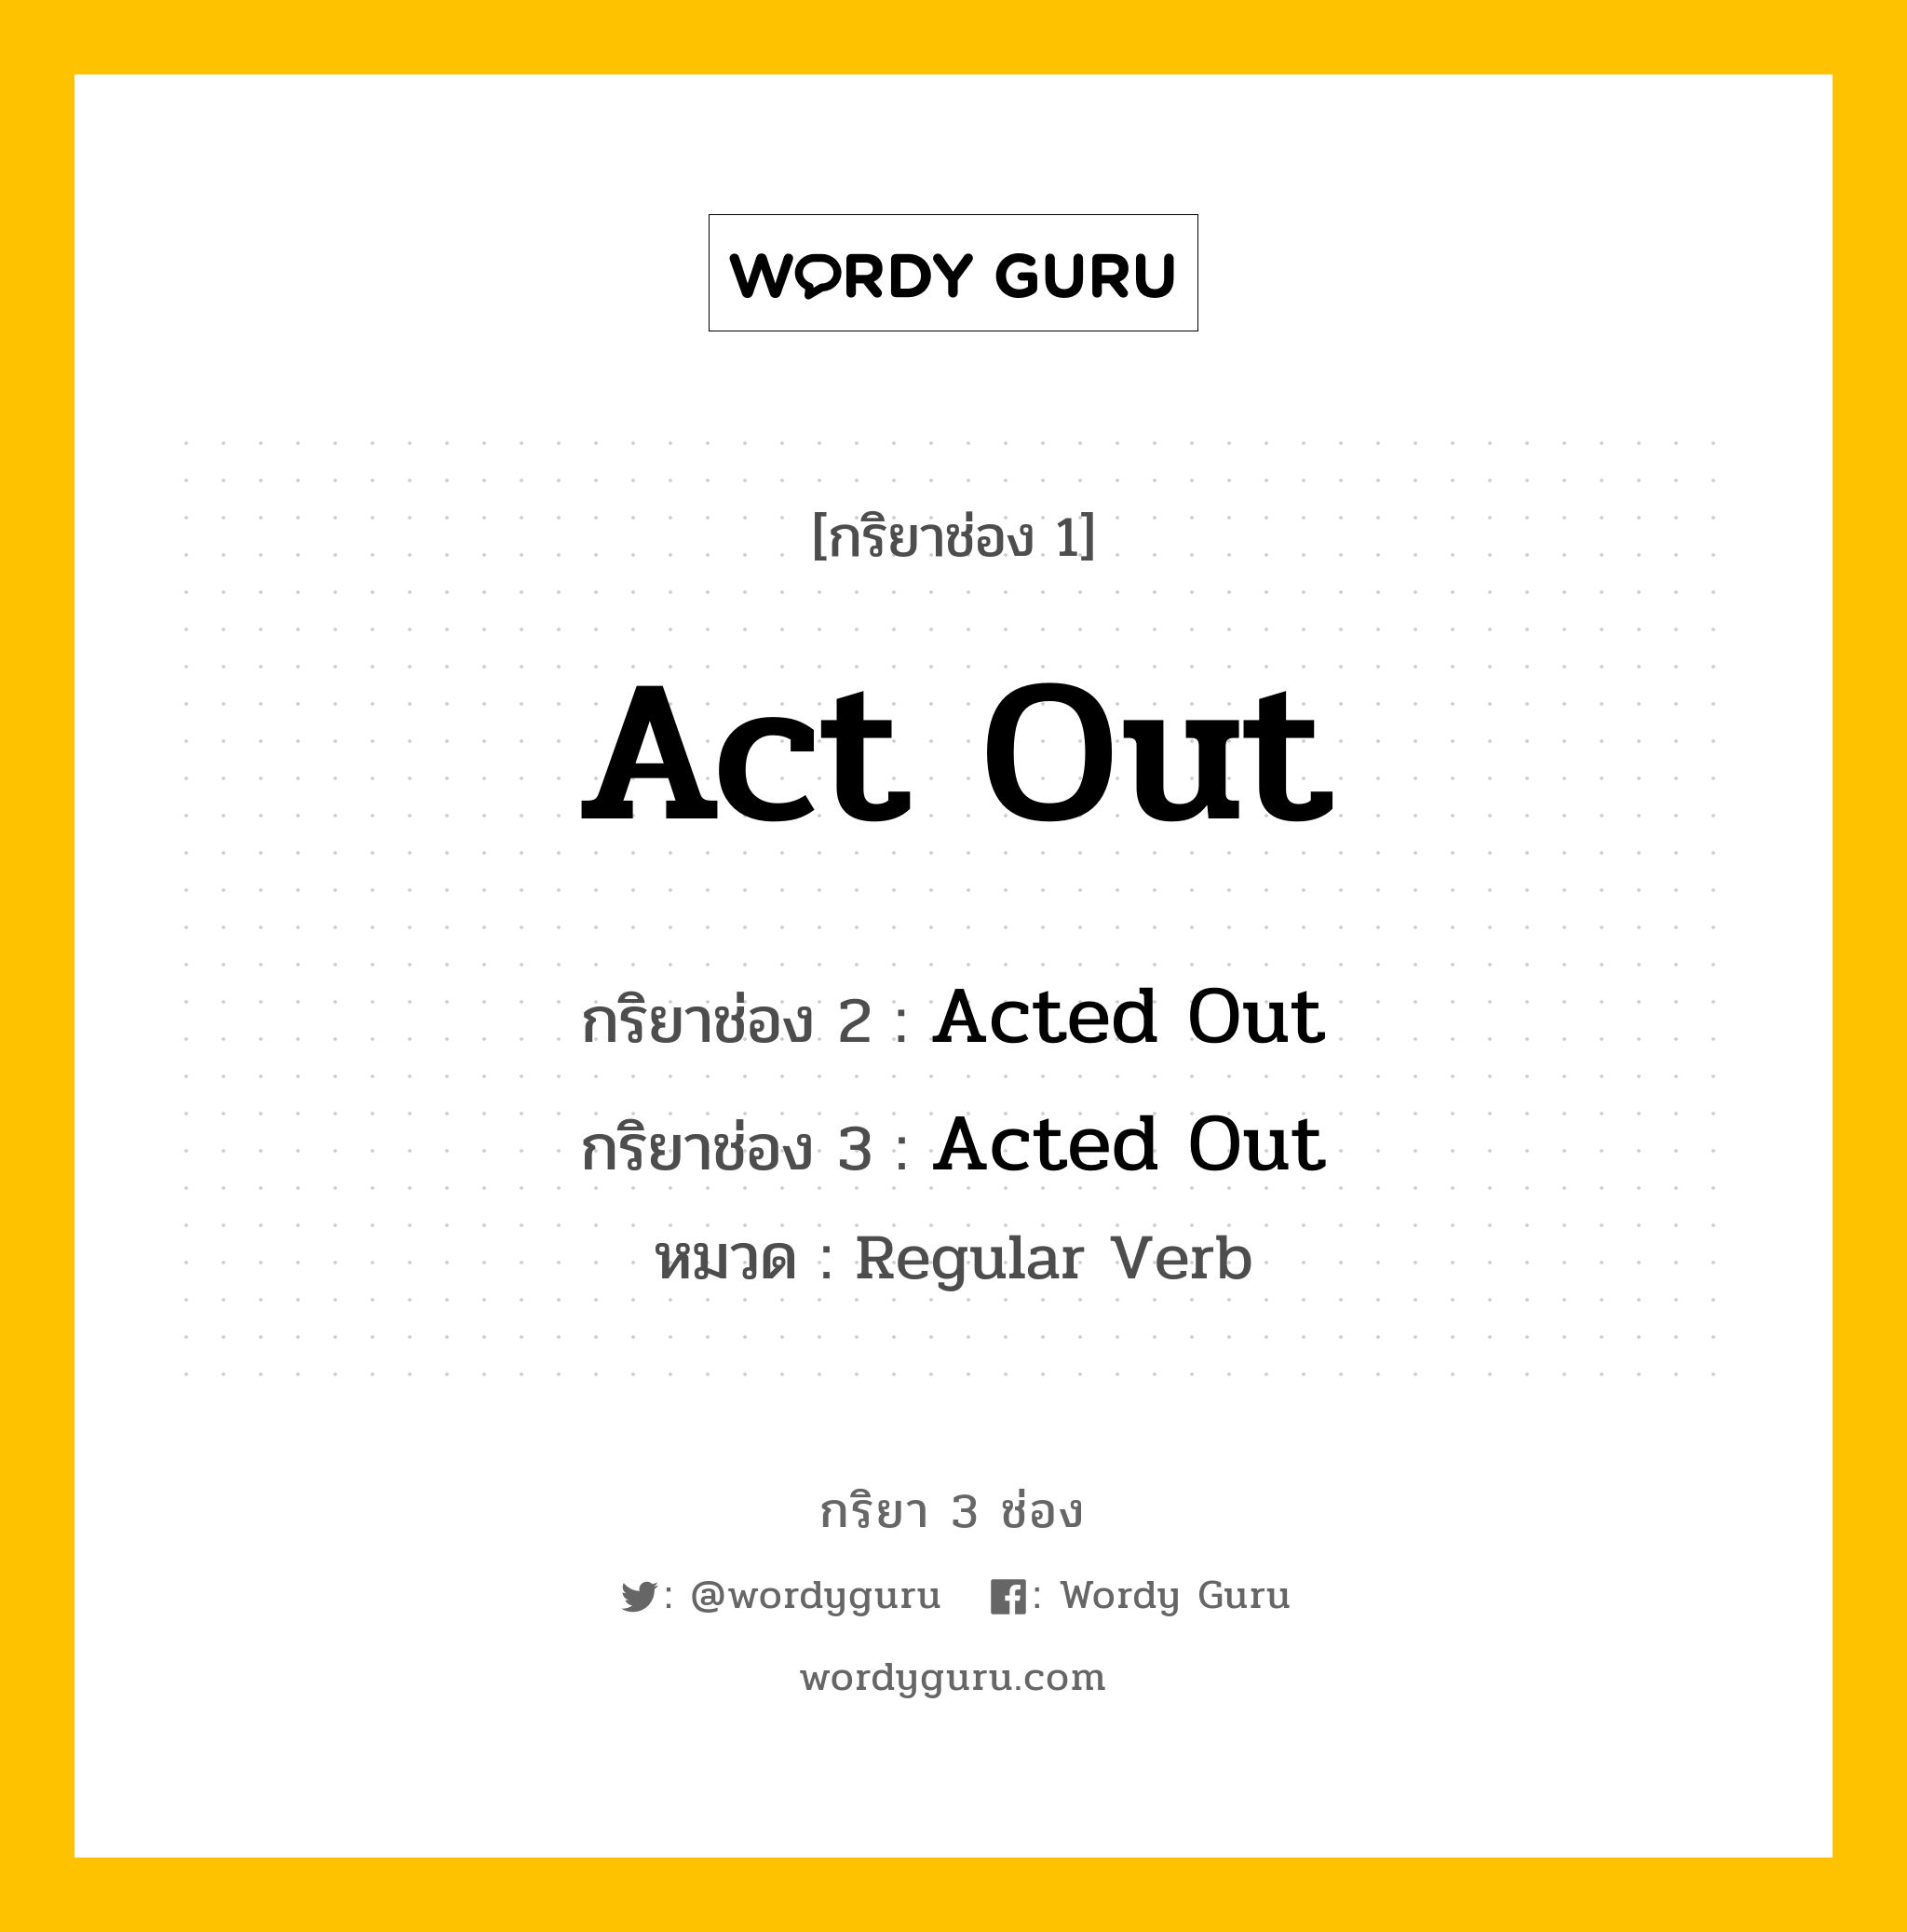 Act Out มีกริยา 3 ช่องอะไรบ้าง? คำศัพท์ในกลุ่มประเภท Regular Verb, กริยาช่อง 1 Act Out กริยาช่อง 2 Acted Out กริยาช่อง 3 Acted Out หมวด Regular Verb หมวด Regular Verb